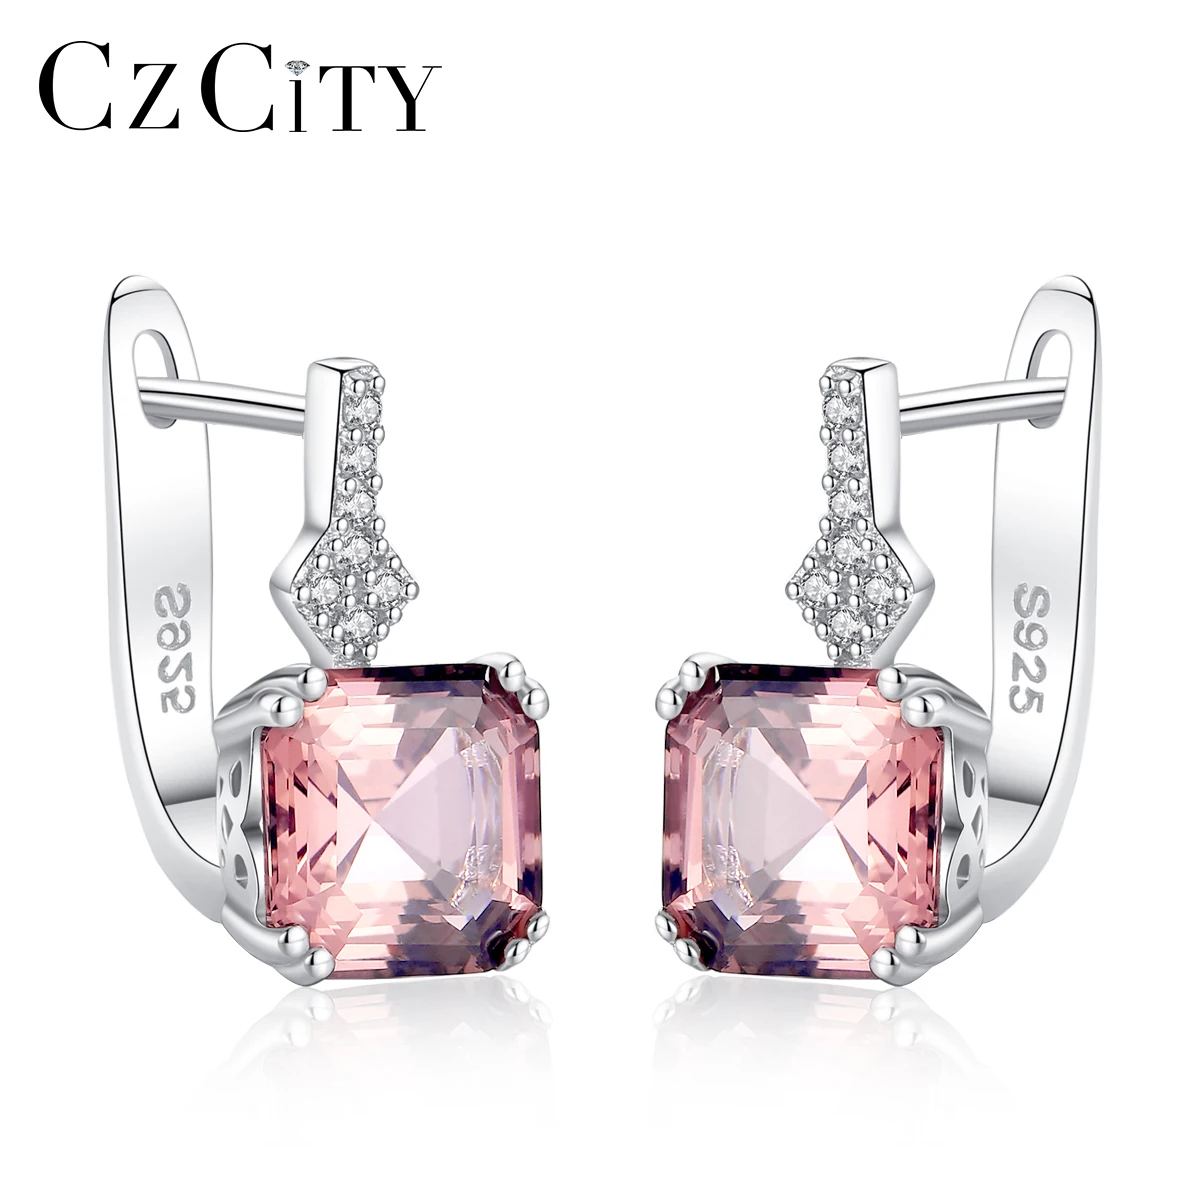 

CZCITY Women Luxury Real 925 Sterling Silver Smoke Topaz Cuff Earrings